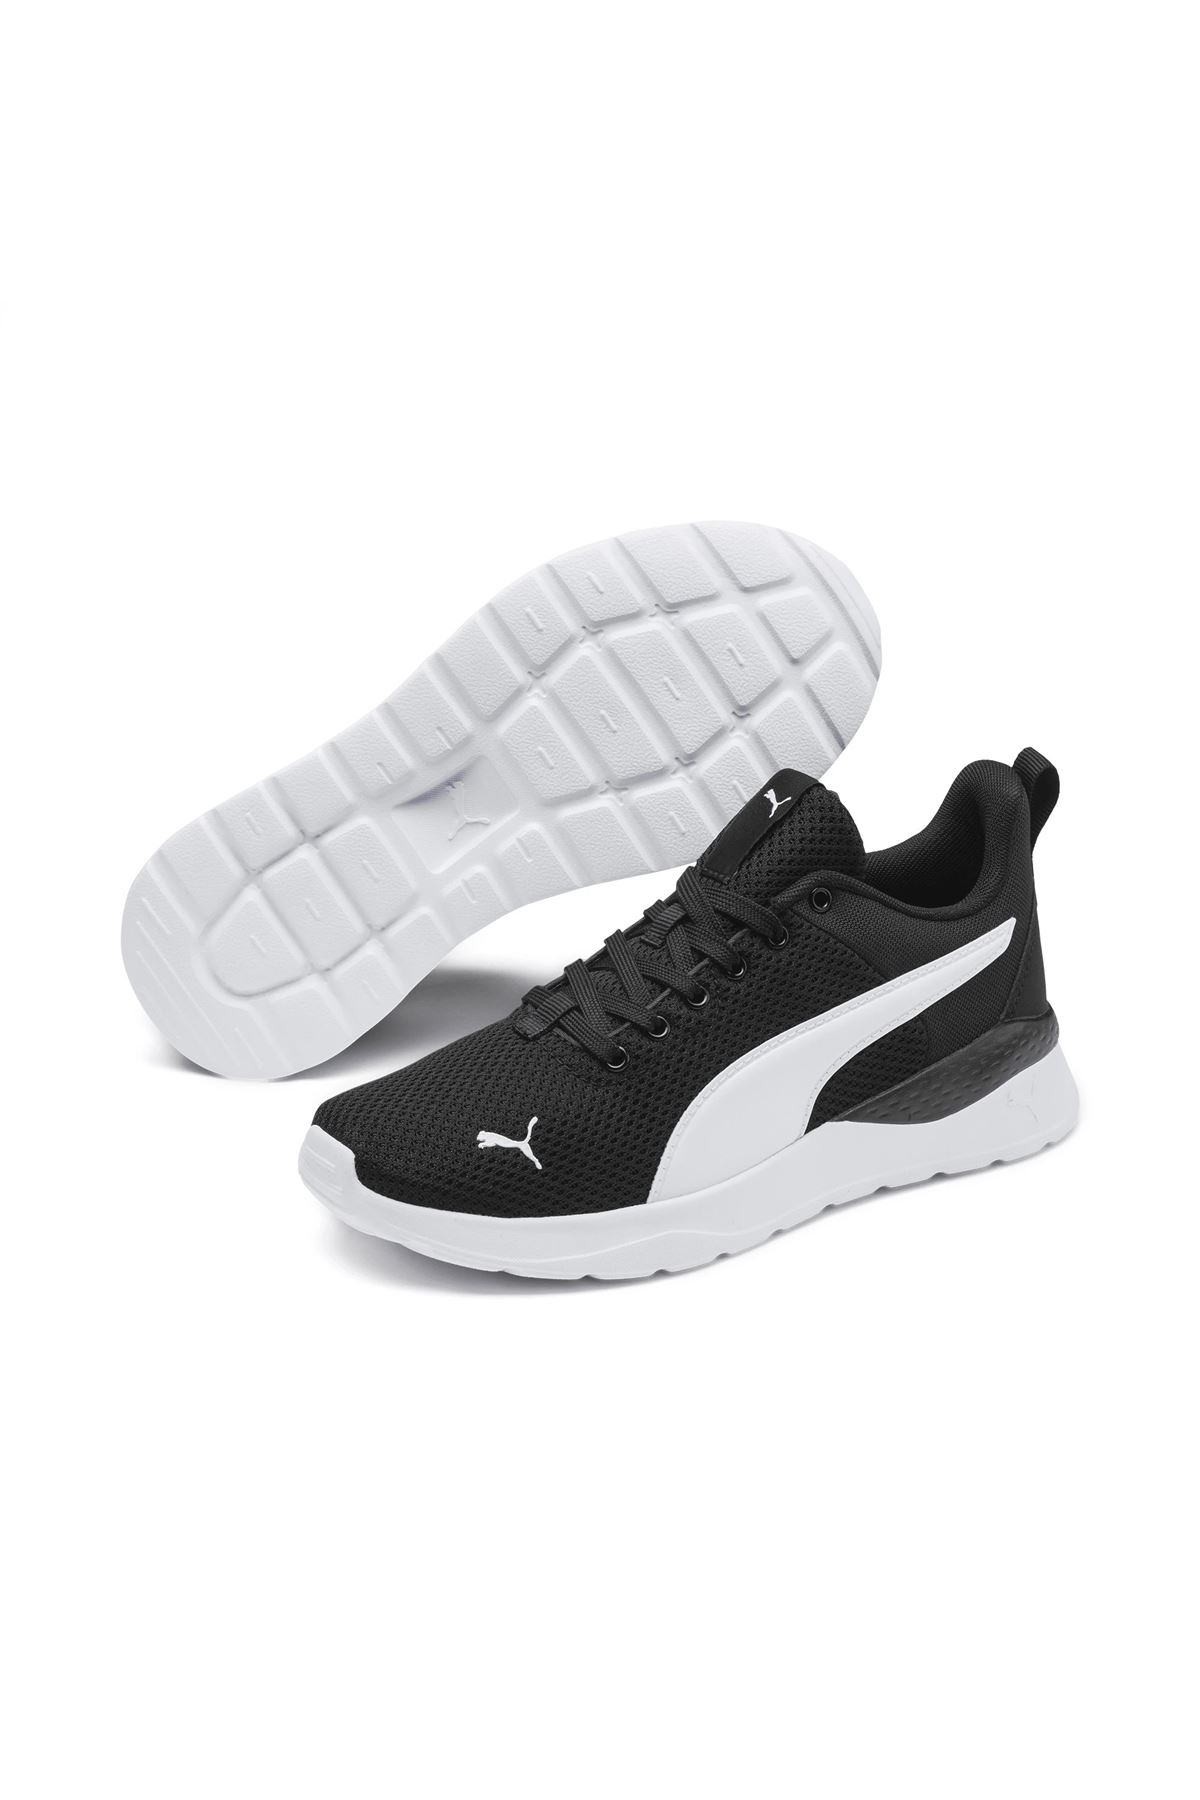 Puma Anzarun Lite Siyah-Beyaz Unisex Spor Ayakkabı